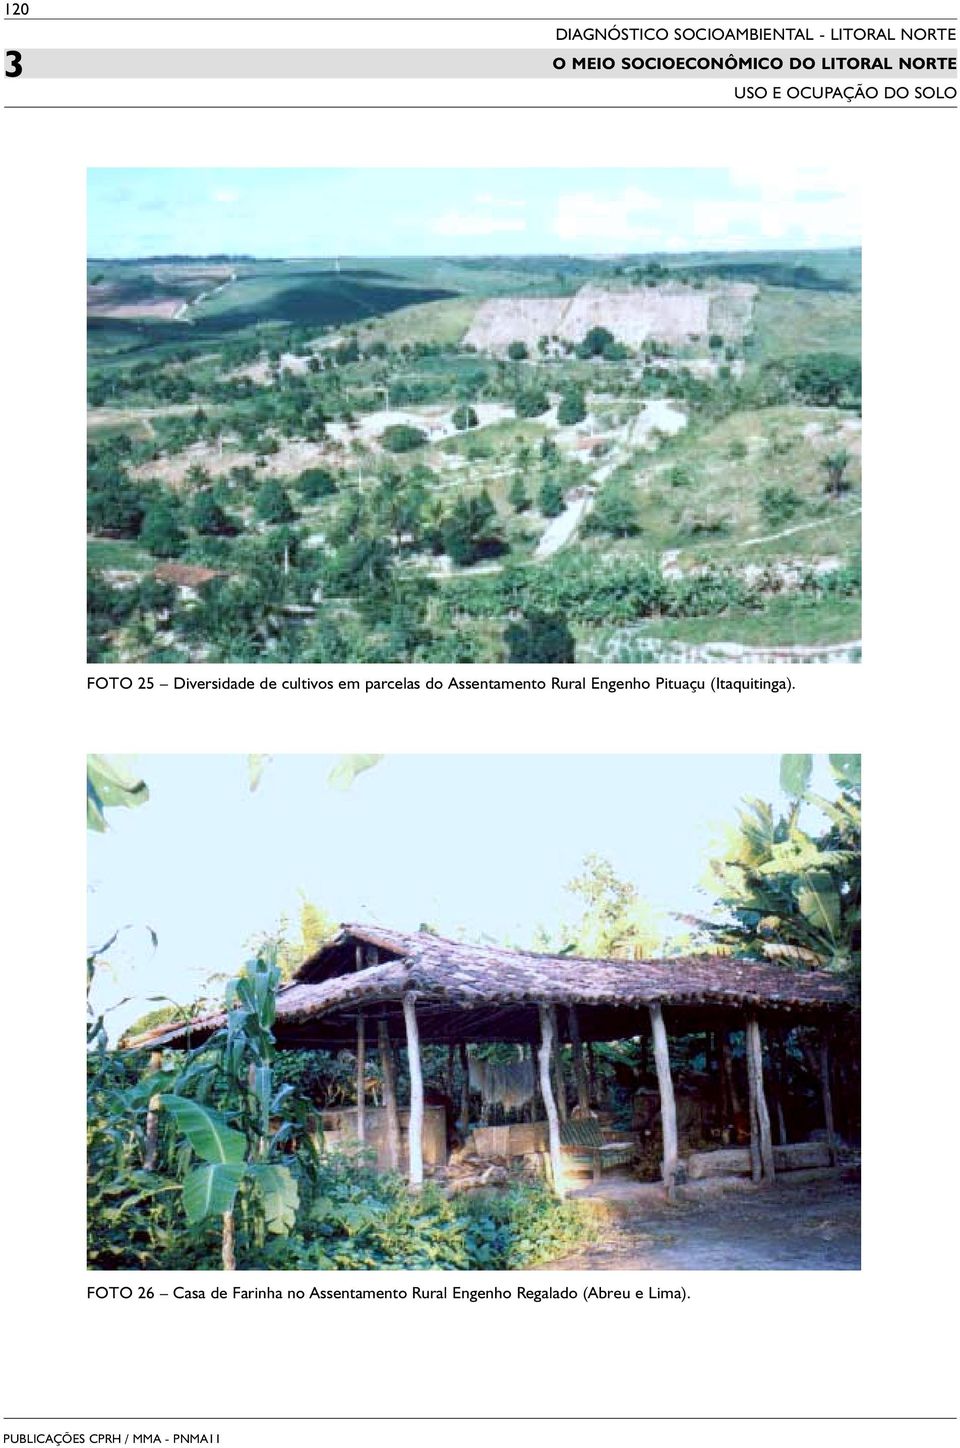 Rural Engenho Pituaçu (Itaquitinga).